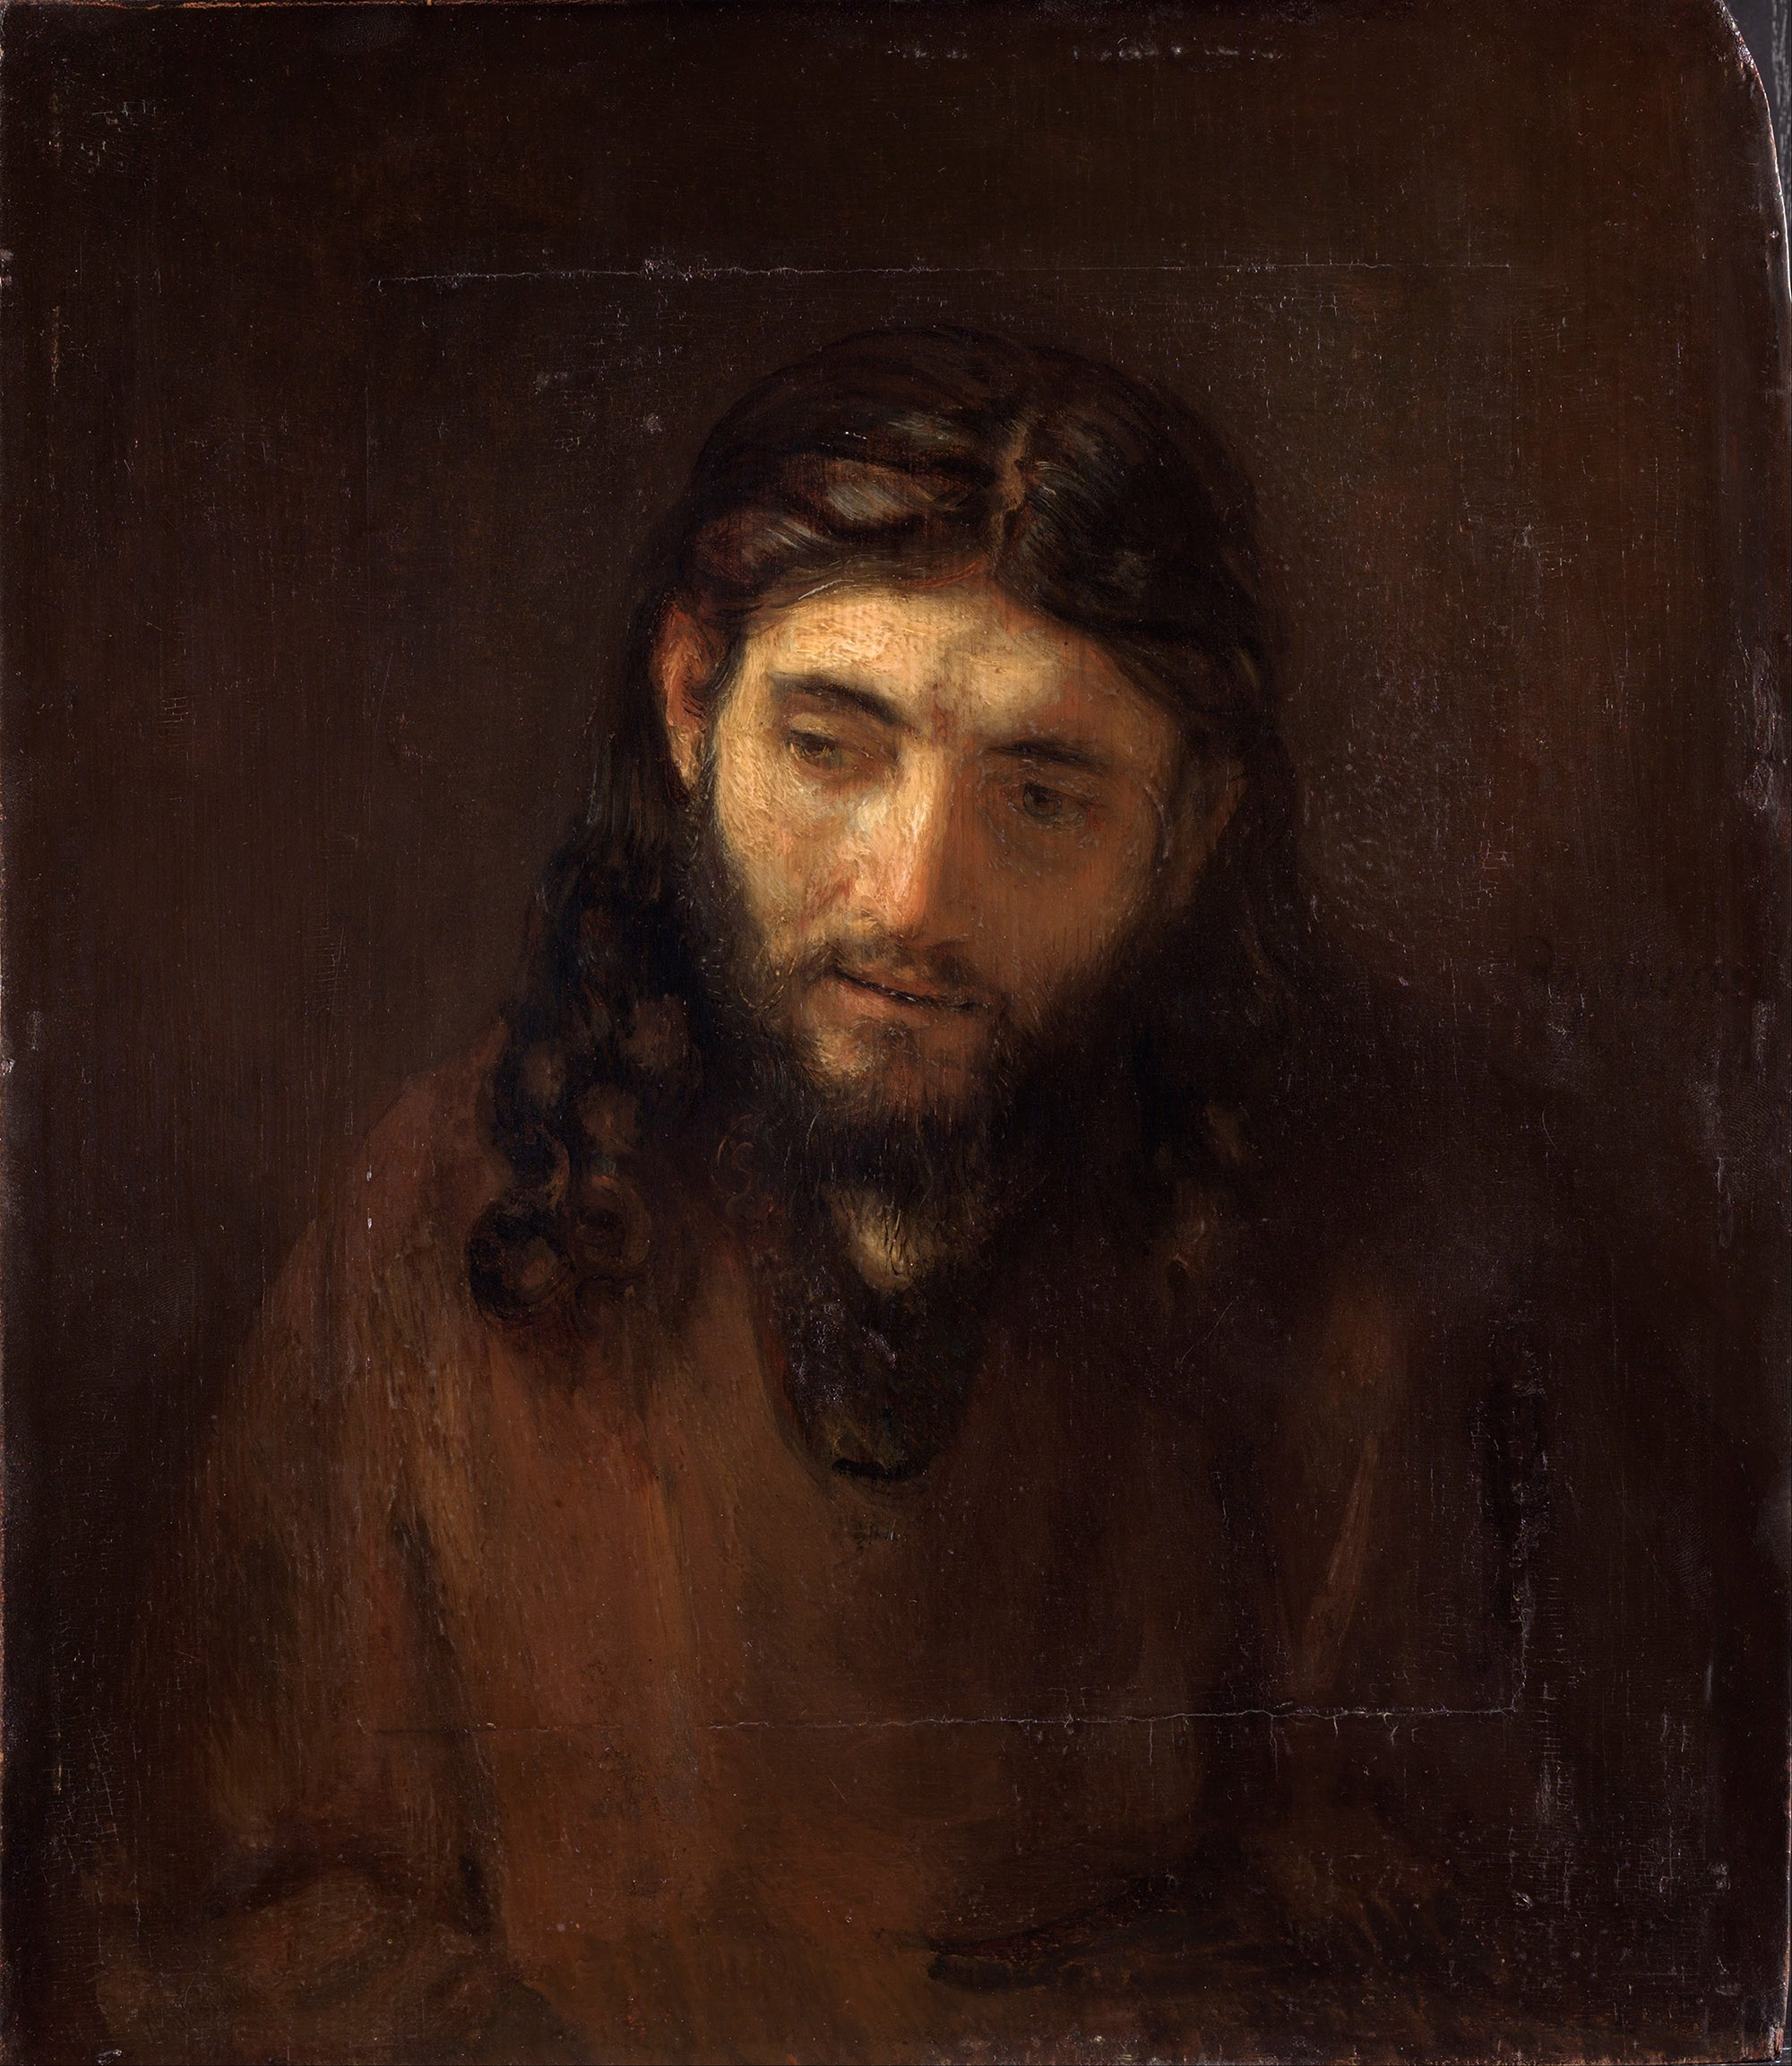 Рембрандт Харменс ван Рейн. "Голова Христа". около 1648-1856. Музей искусств, Филадельфия.